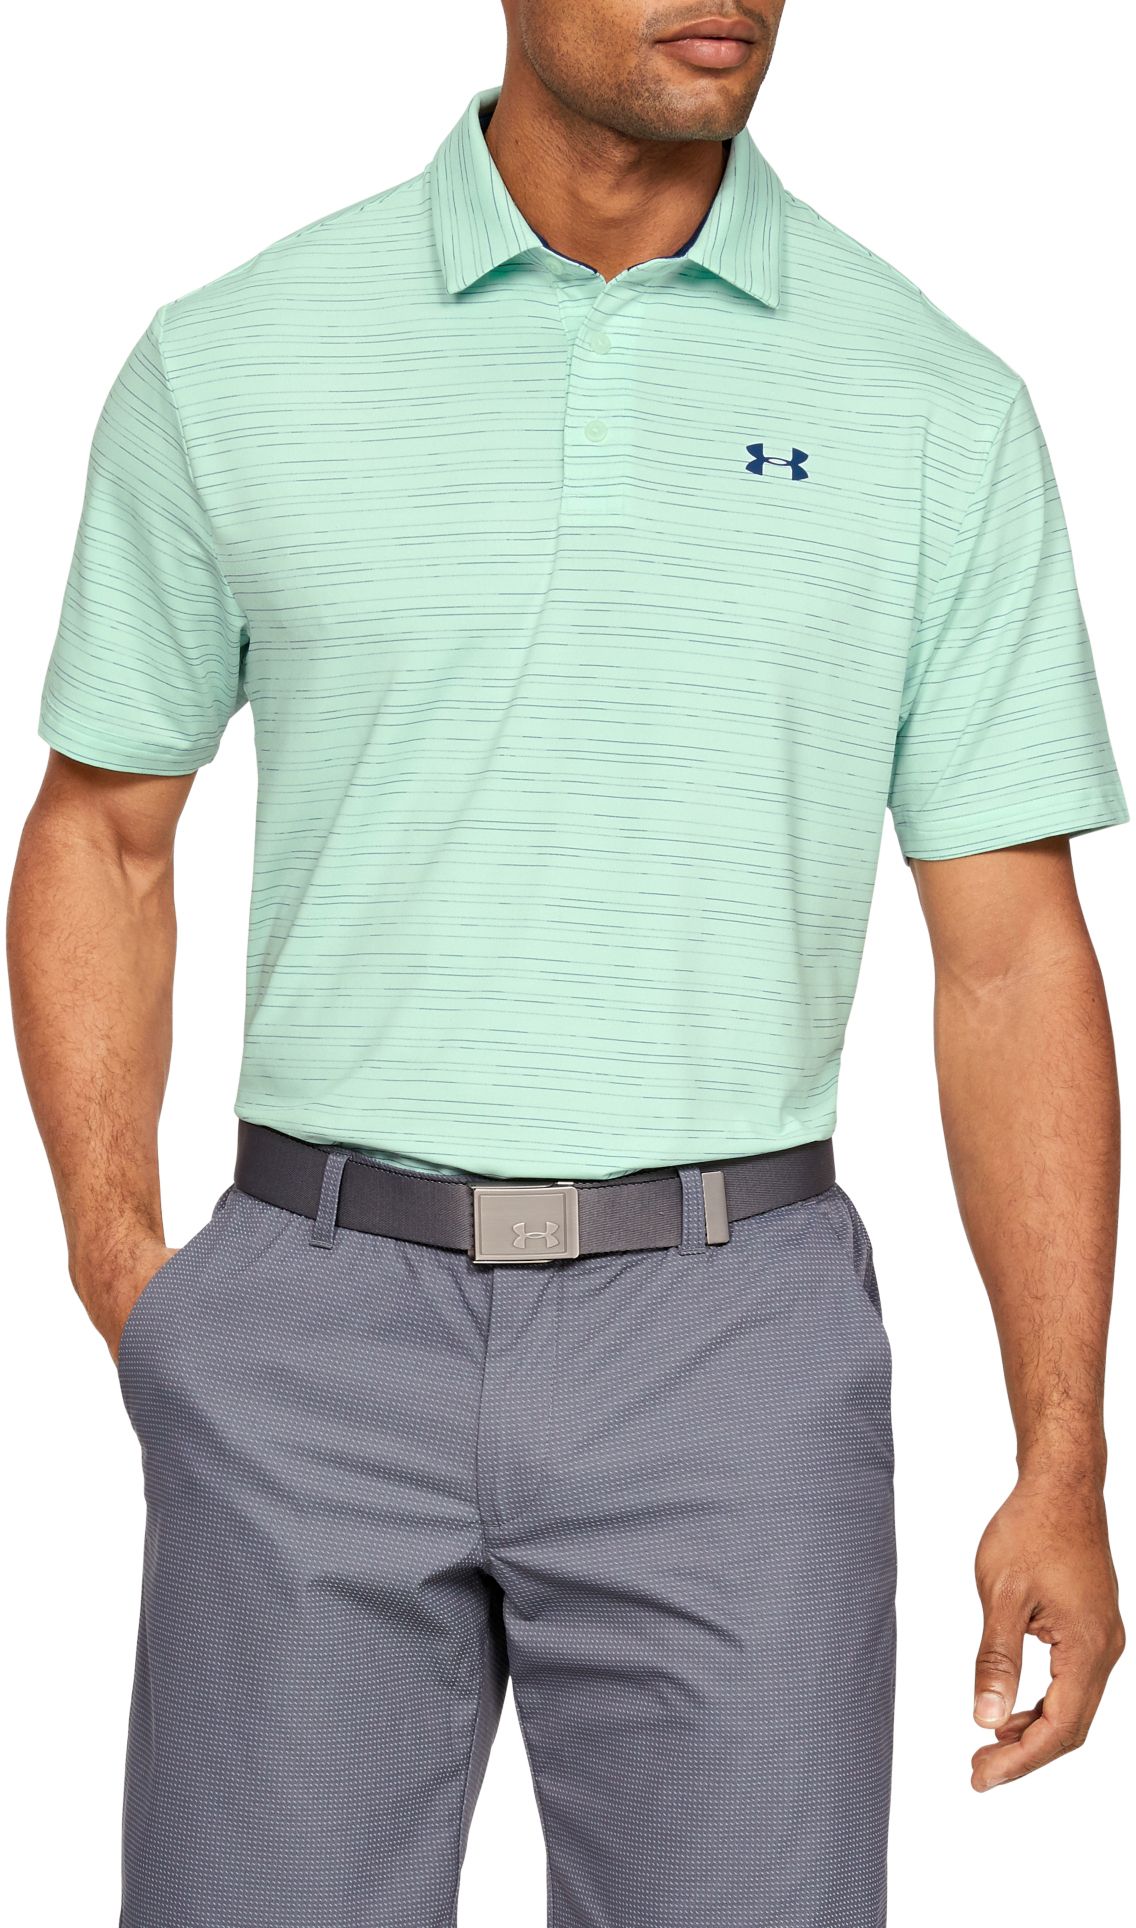 Golf Polo Shirts Under Armour Shop, 50% OFF | www.emanagreen.com